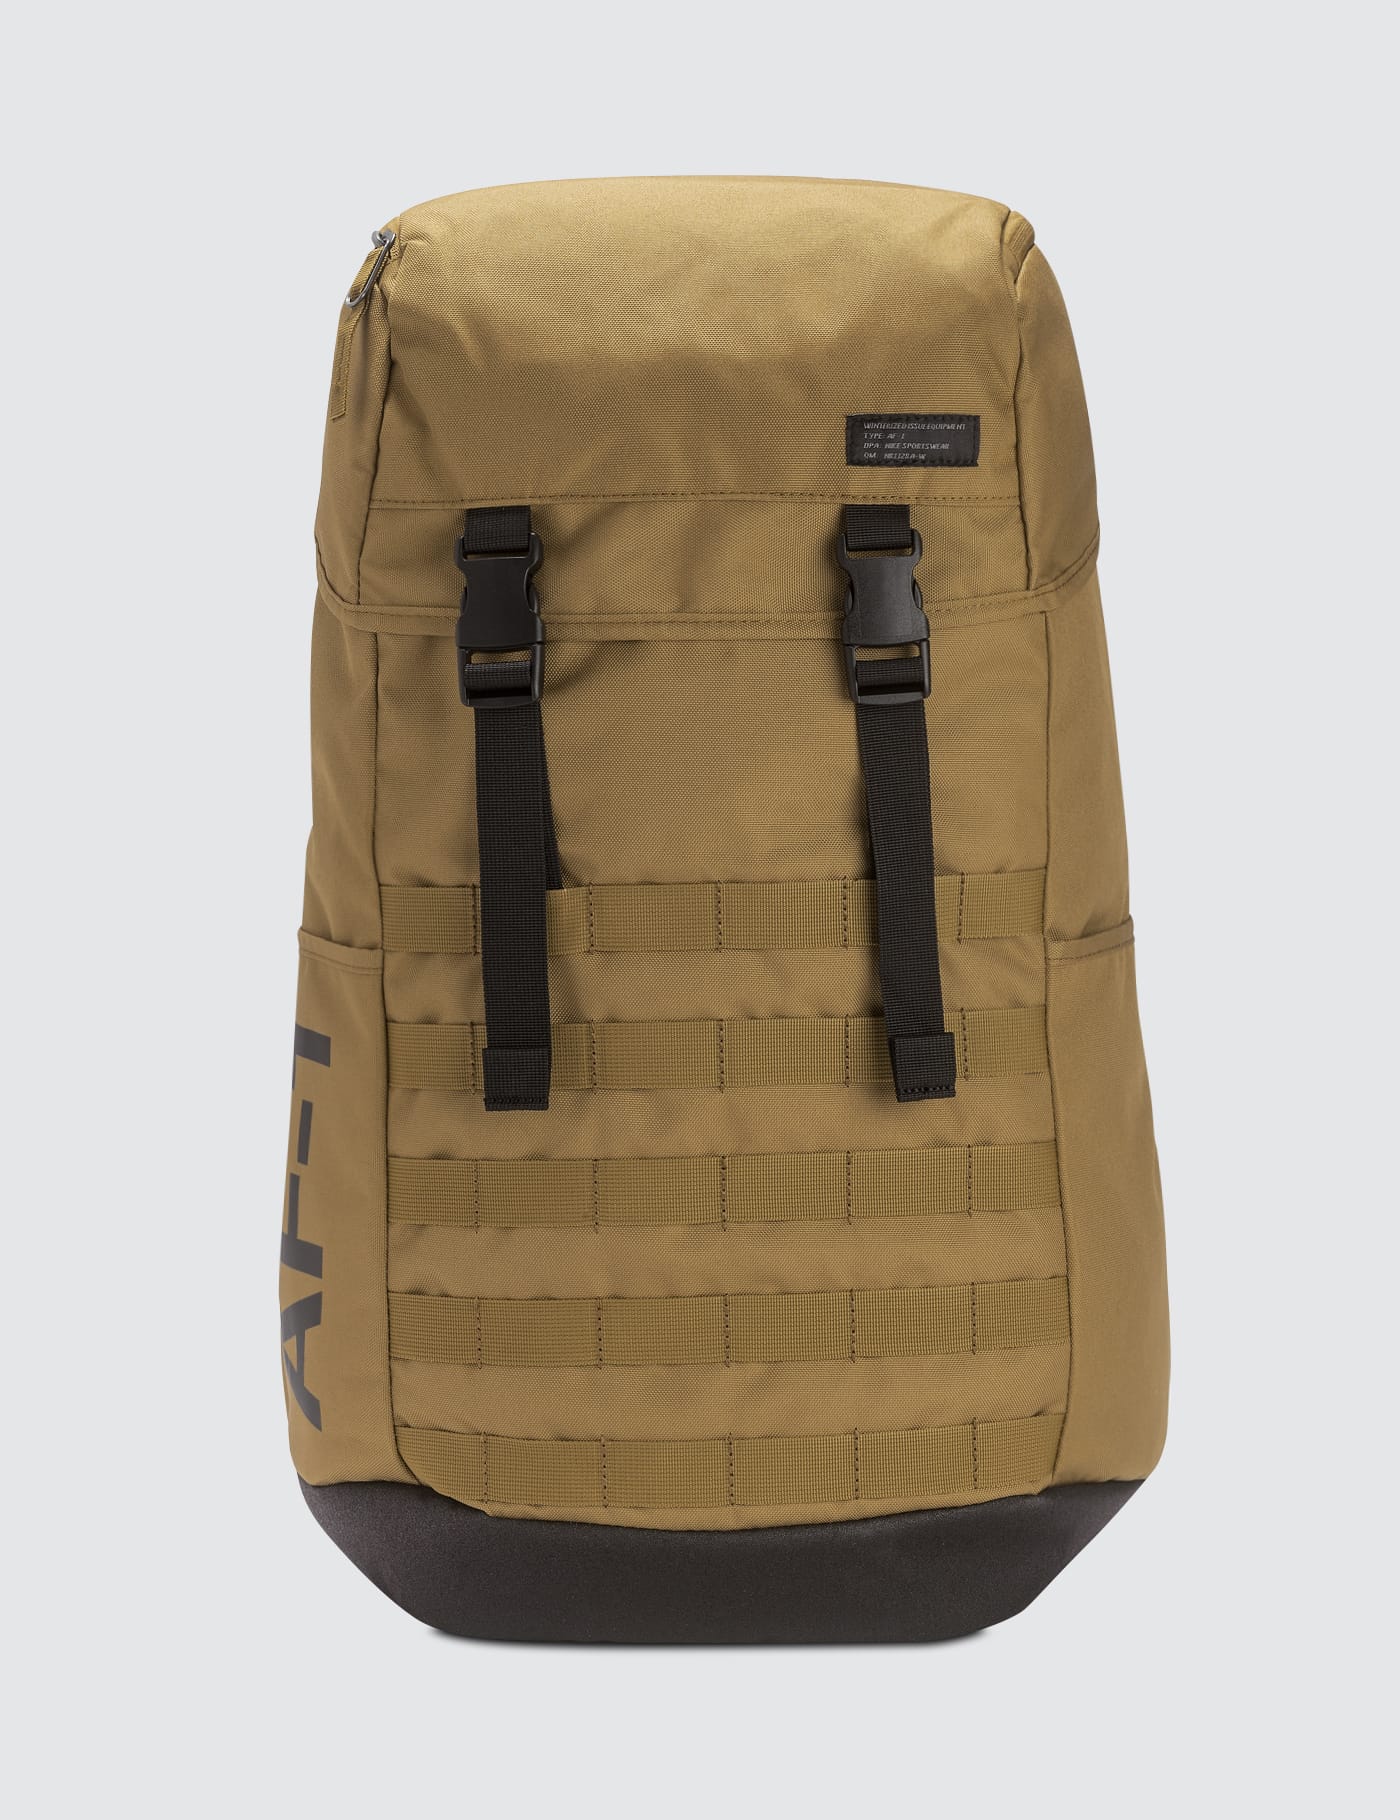 nike air force one backpack